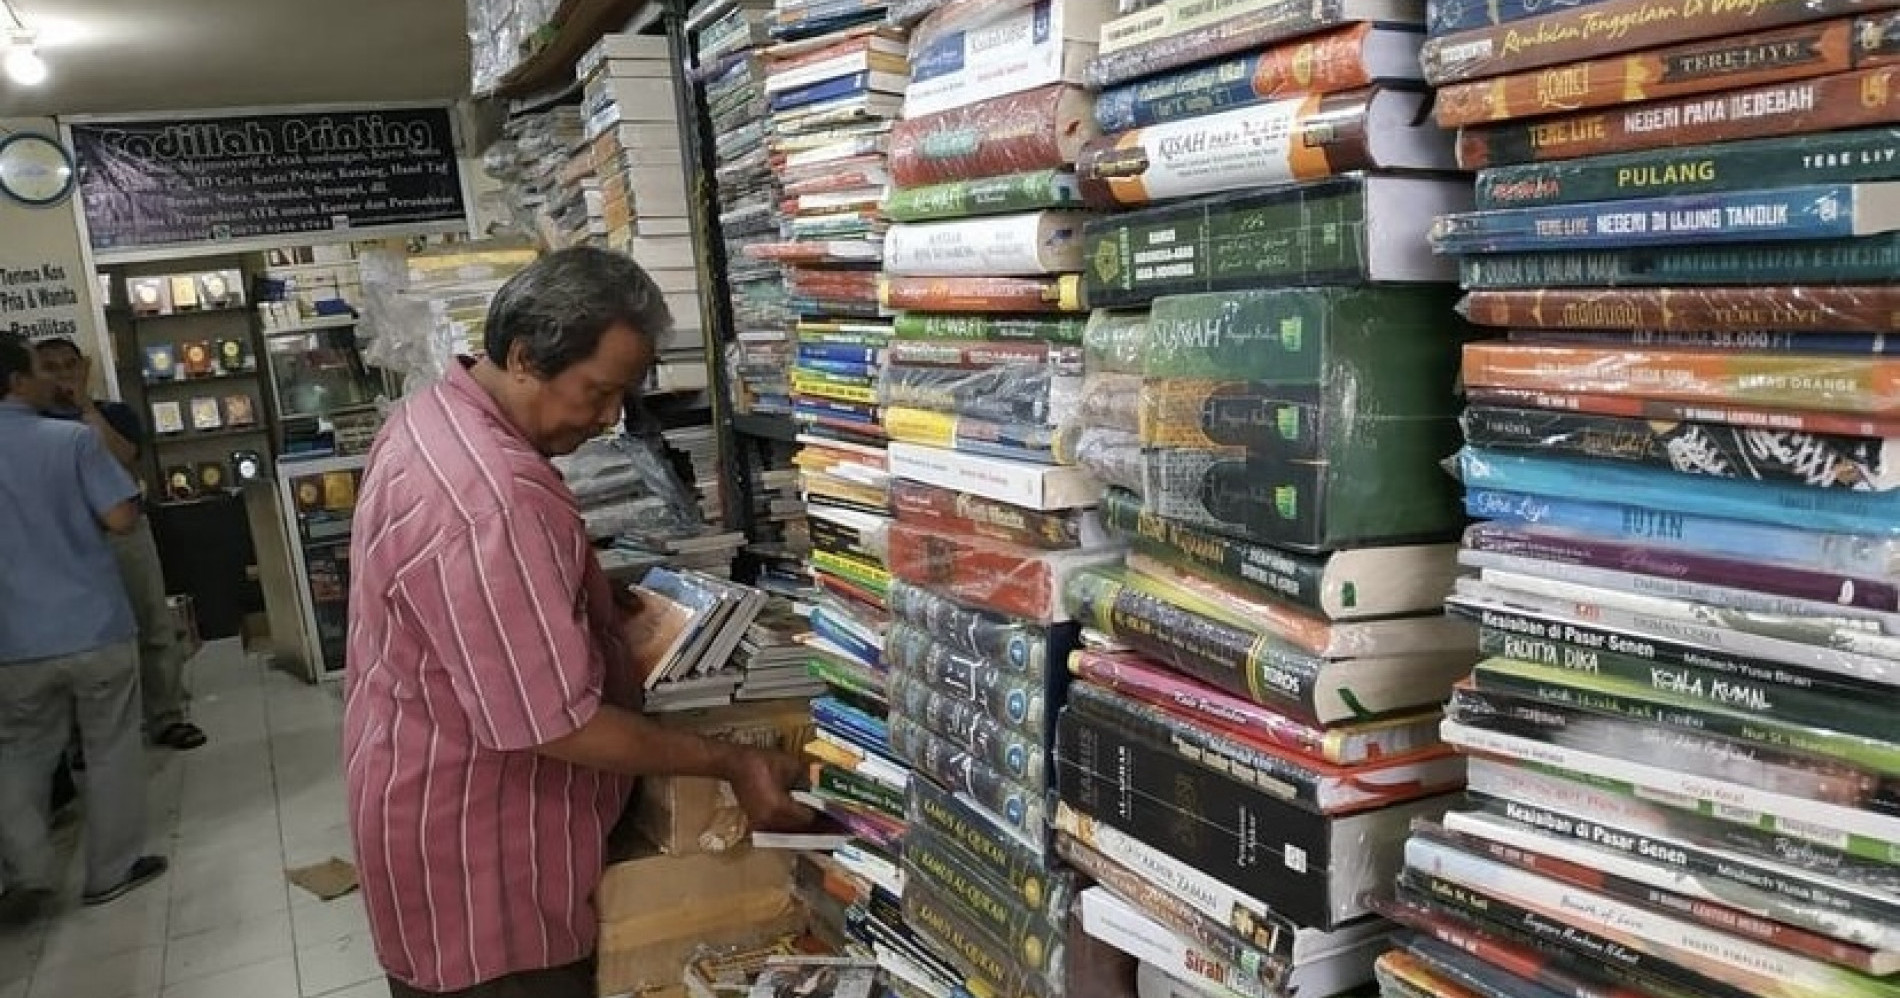 Bisnis buku bekas di Pasar Buku Kwitang (Sumber gambar: Instagram @hattasyamsuddin)